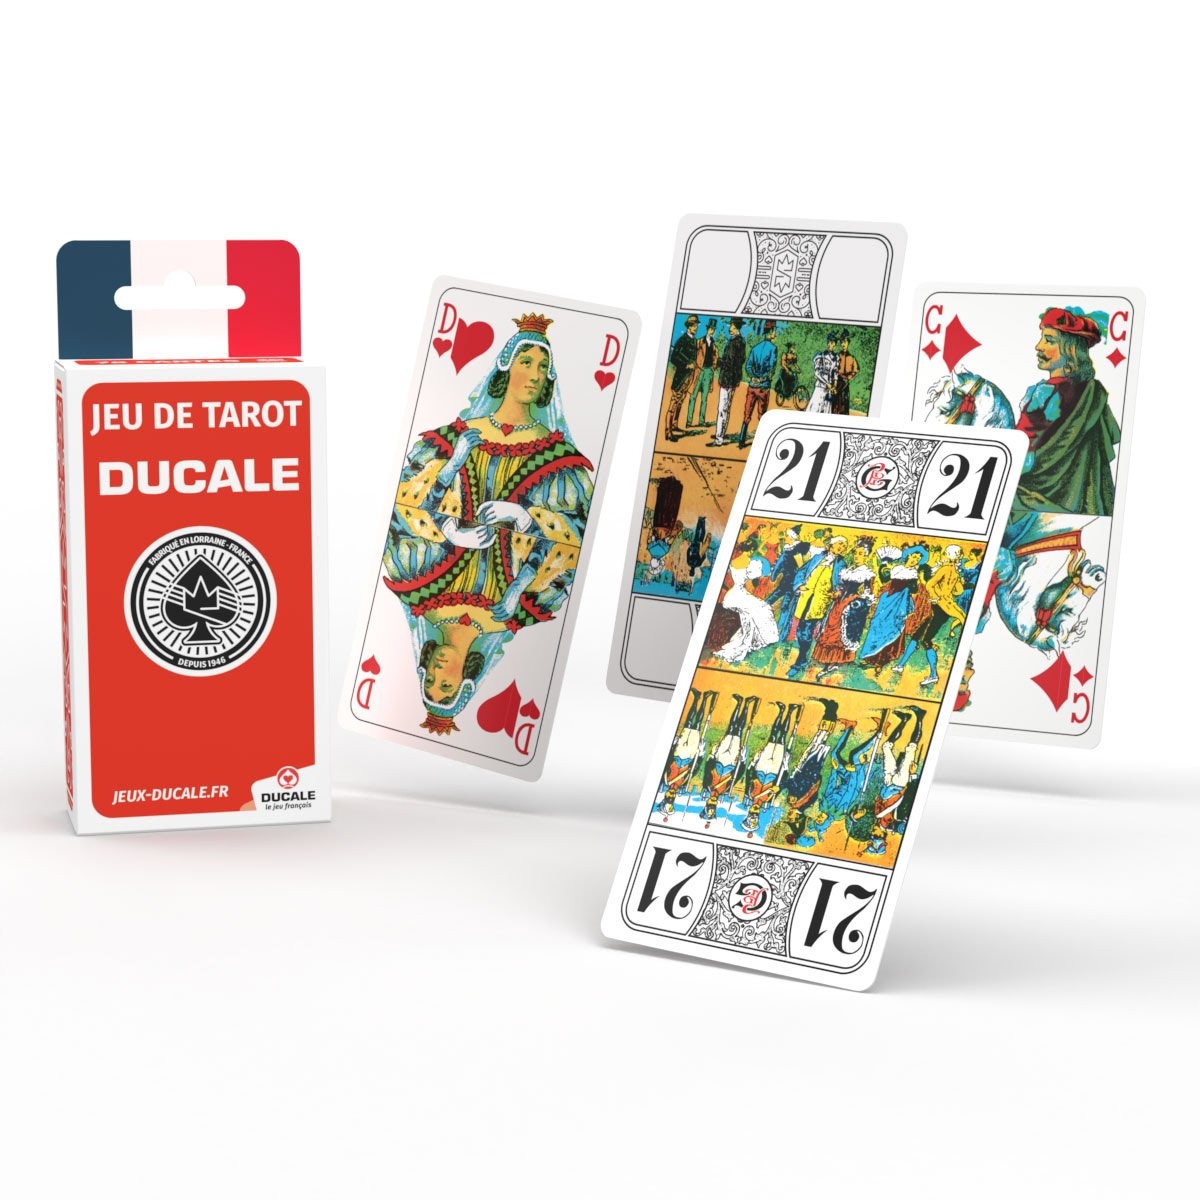 Jeux de 54 Cartes Ducale - La Grande Récré